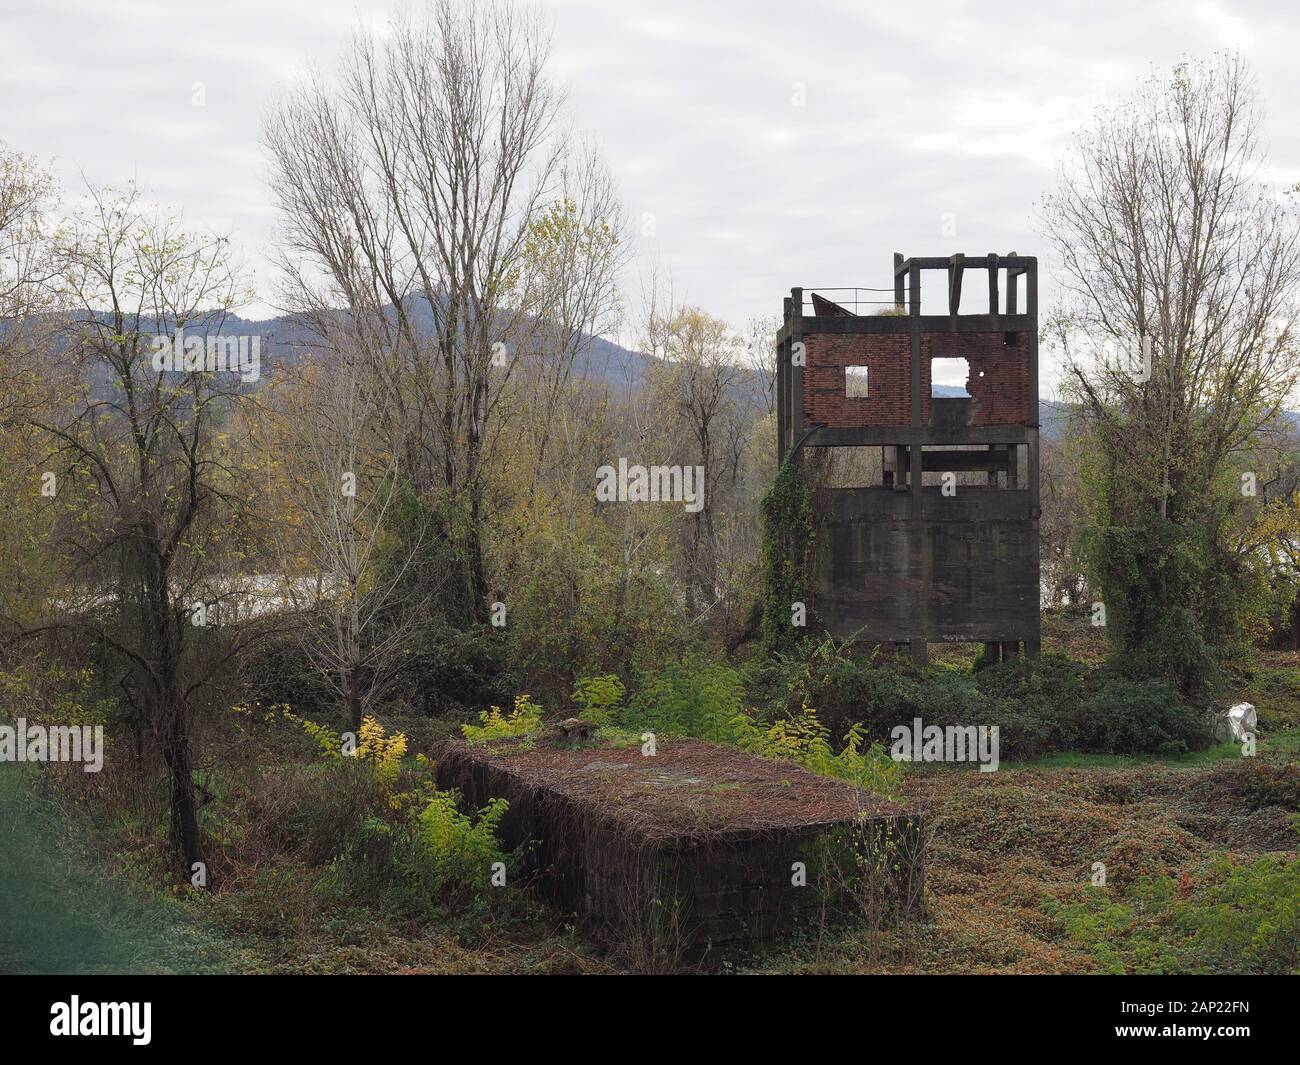 SETTIMO TORINESE, Italia - CIRCA NOVEMBRE 2019: vintage rovine industriali dal fiume Foto Stock